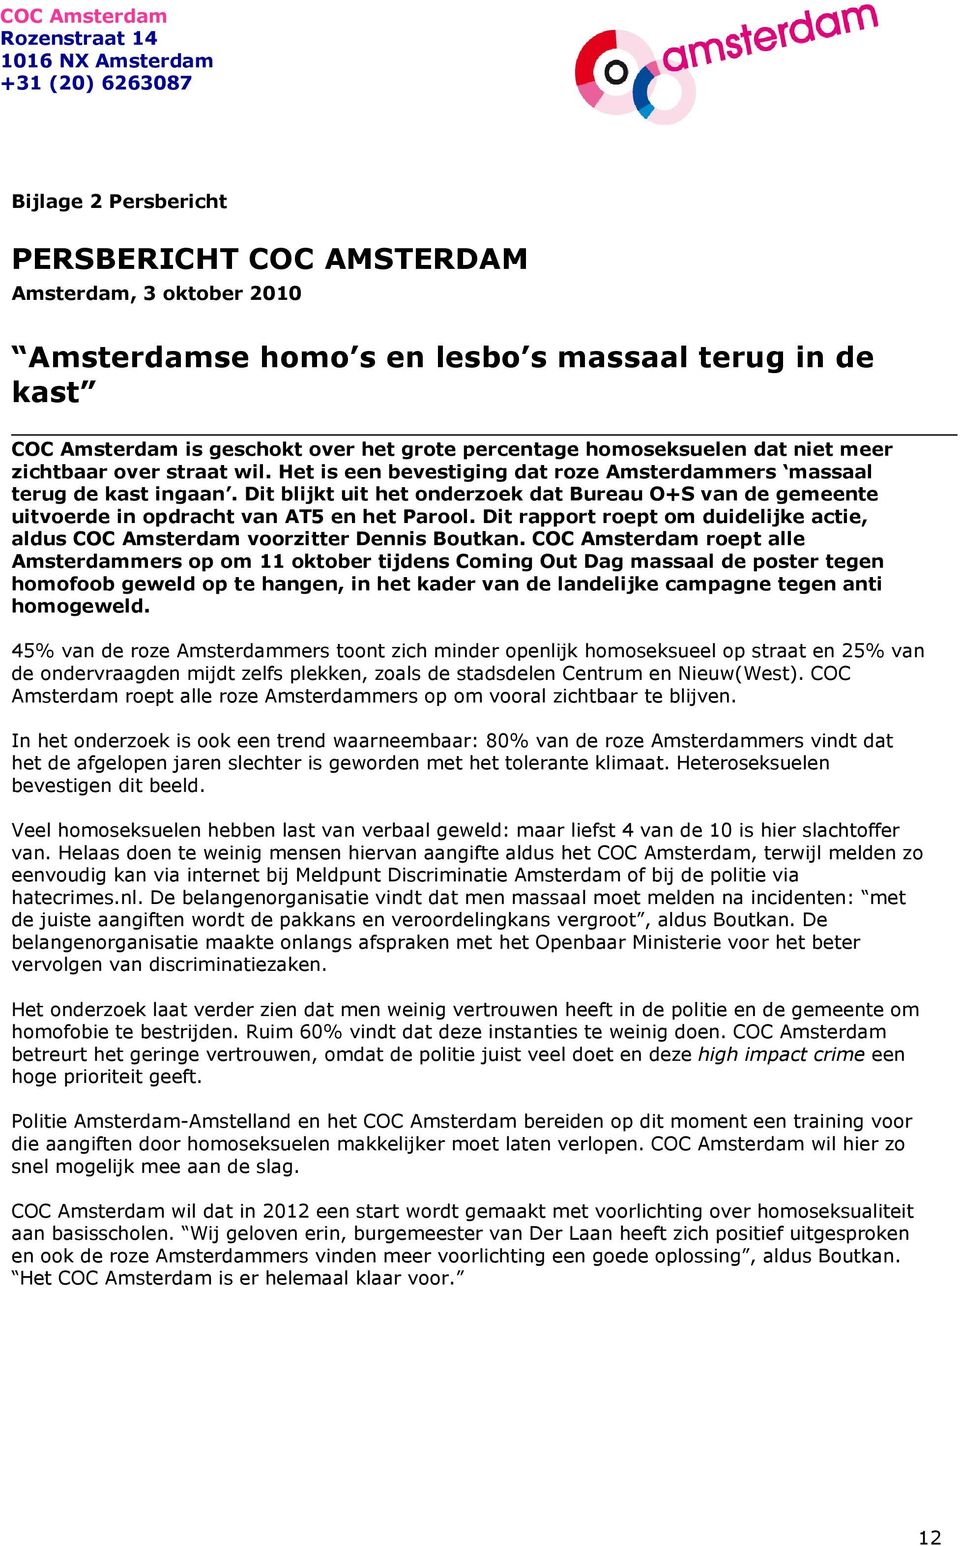 Dit blijkt uit het onderzoek dat Bureau O+S van de gemeente uitvoerde in opdracht van AT5 en het Parool. Dit rapport roept om duidelijke actie, aldus COC Amsterdam voorzitter Dennis Boutkan.